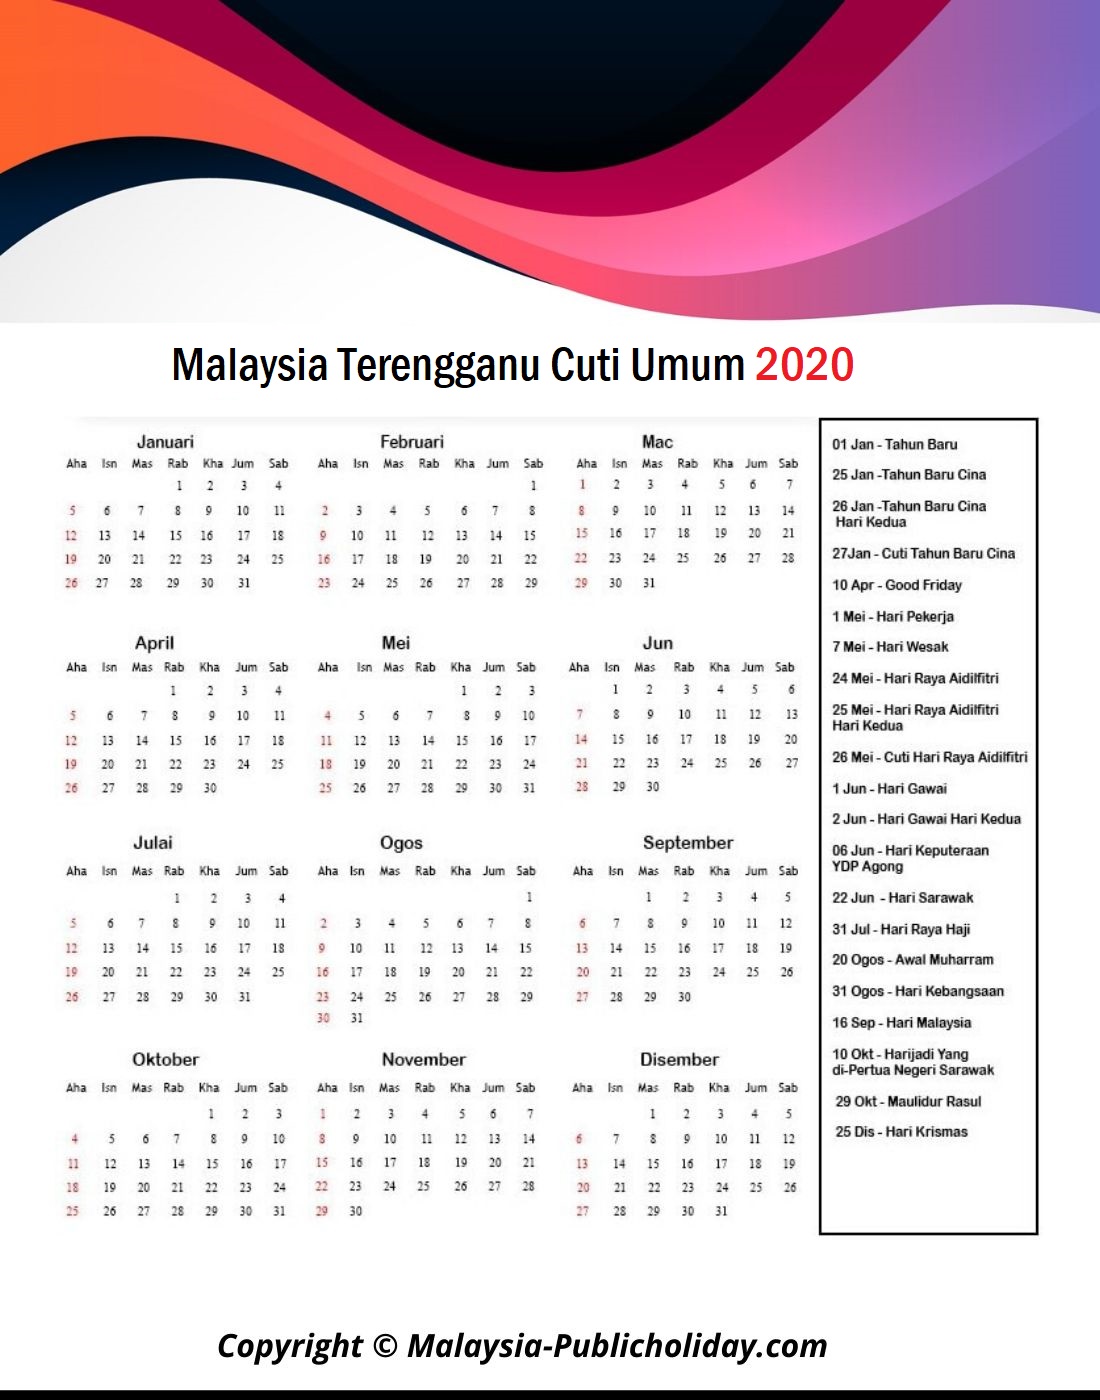 Terengganu Cuti Umum Kalendar 2020